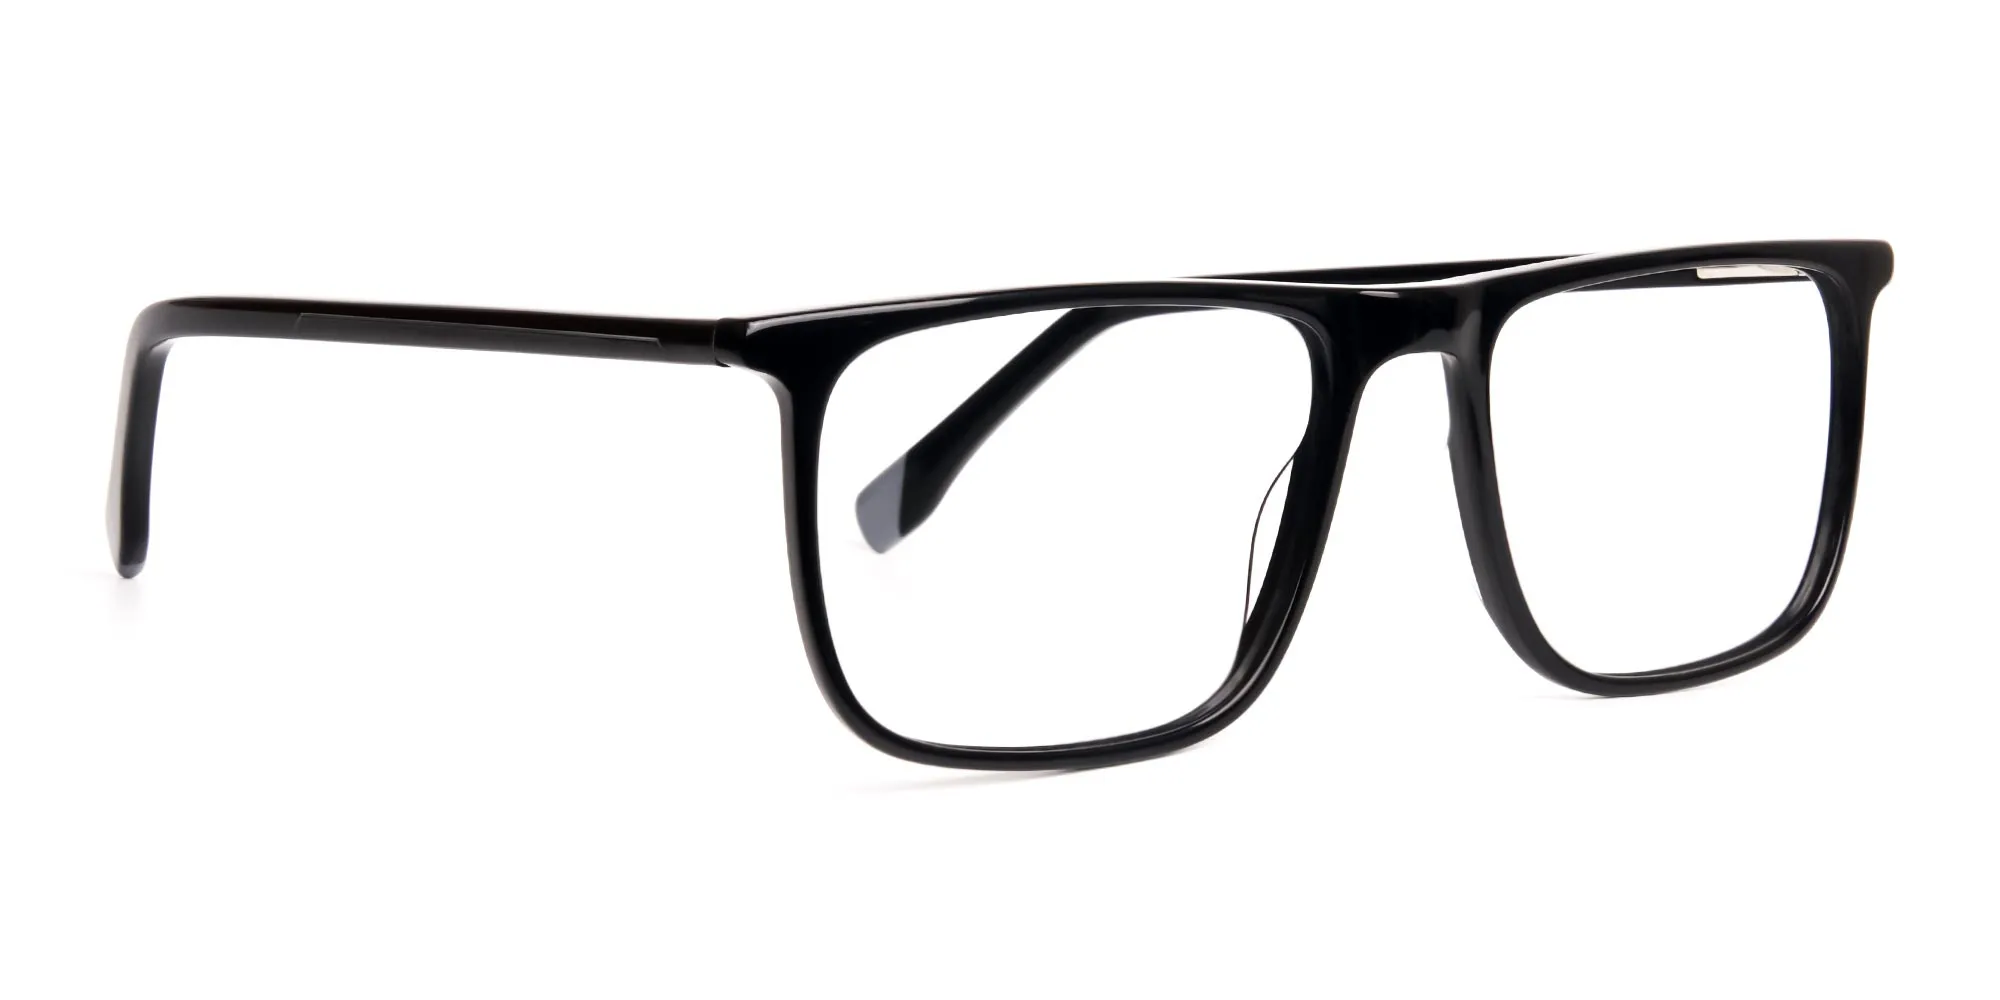 simple-black-rectangular-glasses-frames-2